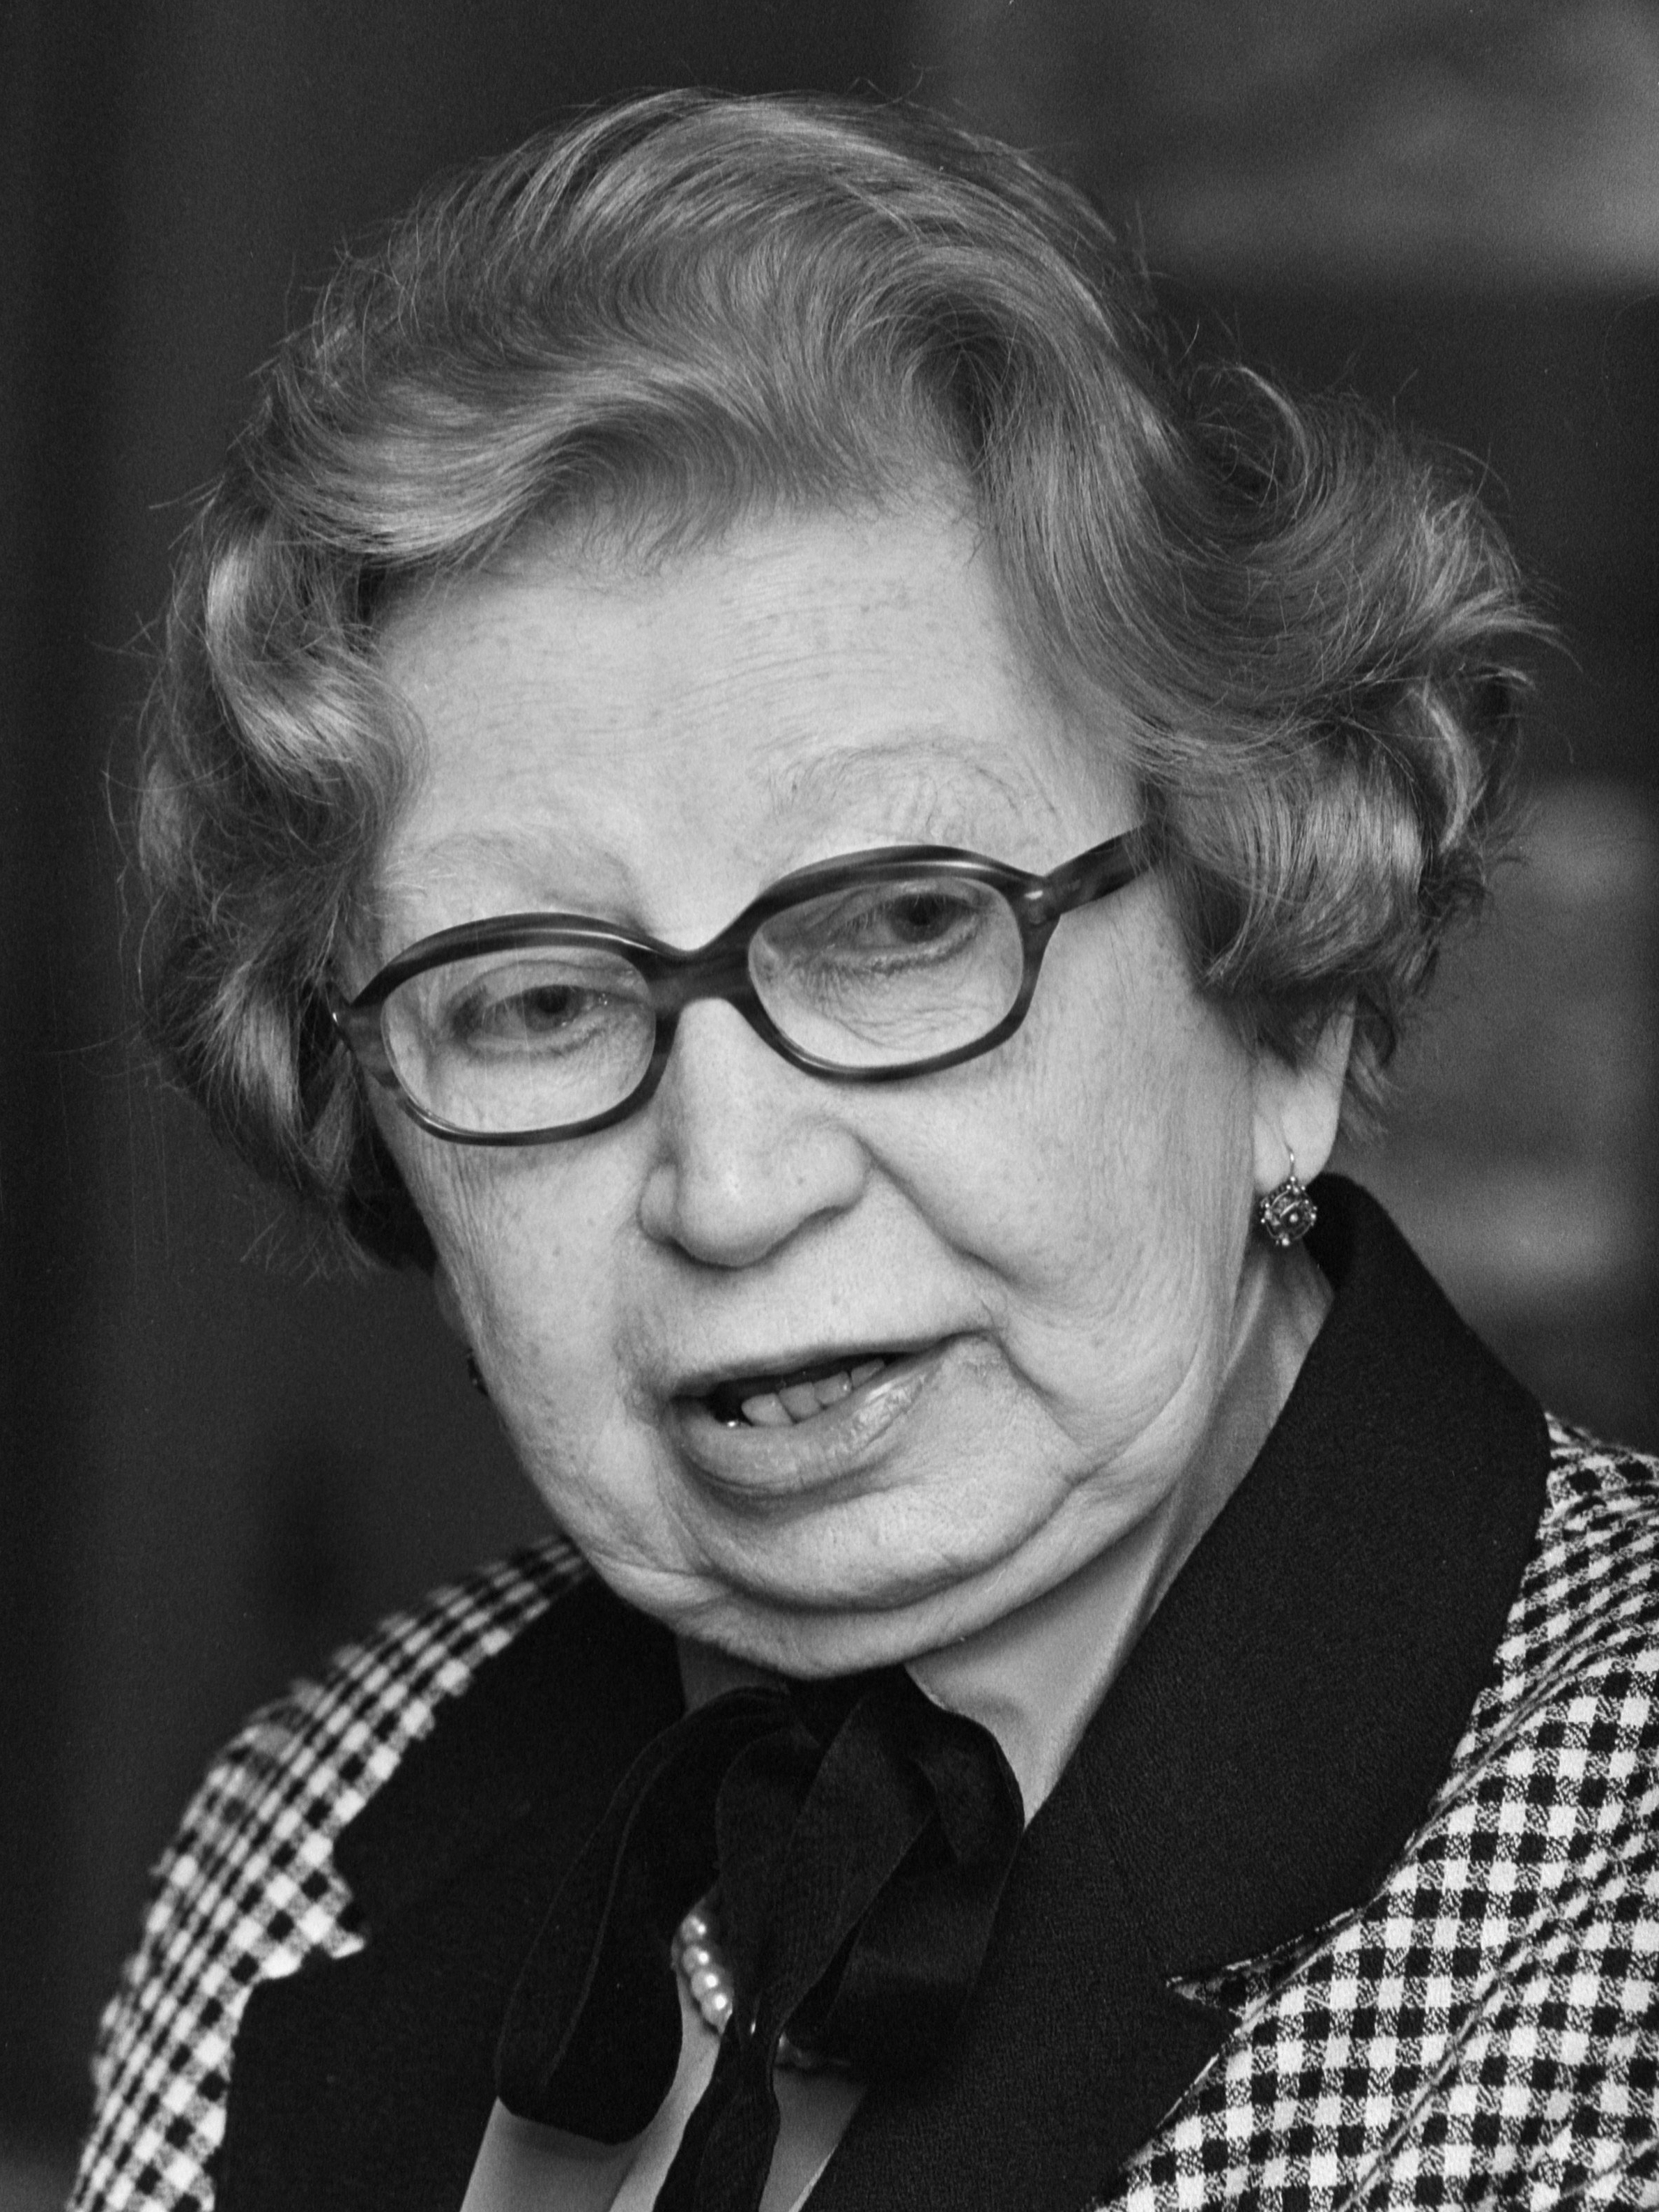 auteur Miep Gies de la citation Imaginez que les jeunes grandissent avec le sentiment que vous devez être un héros pour faire votre devoir humain. J'ai peur que personne ne aide jamais les autres, car qui est un héros?